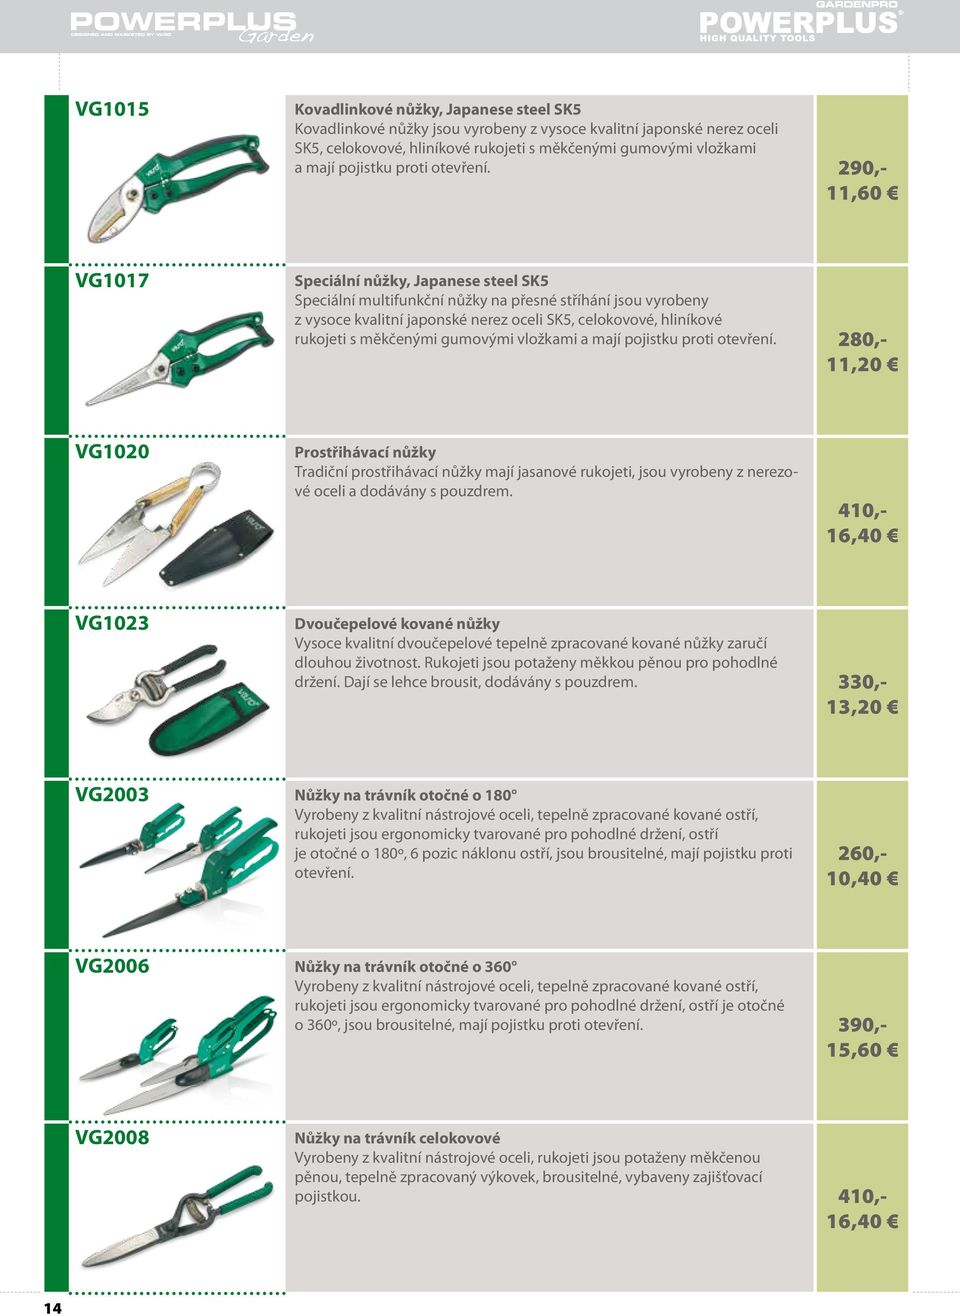 290,- 11,60 VG1017 Speciální nůžky, Japanese steel SK5 Speciální multifunkční nůžky na přesné stříhání jsou vyrobeny z vysoce kvalitní japonské nerez oceli SK5, celokovové, hliníkové rukojeti s